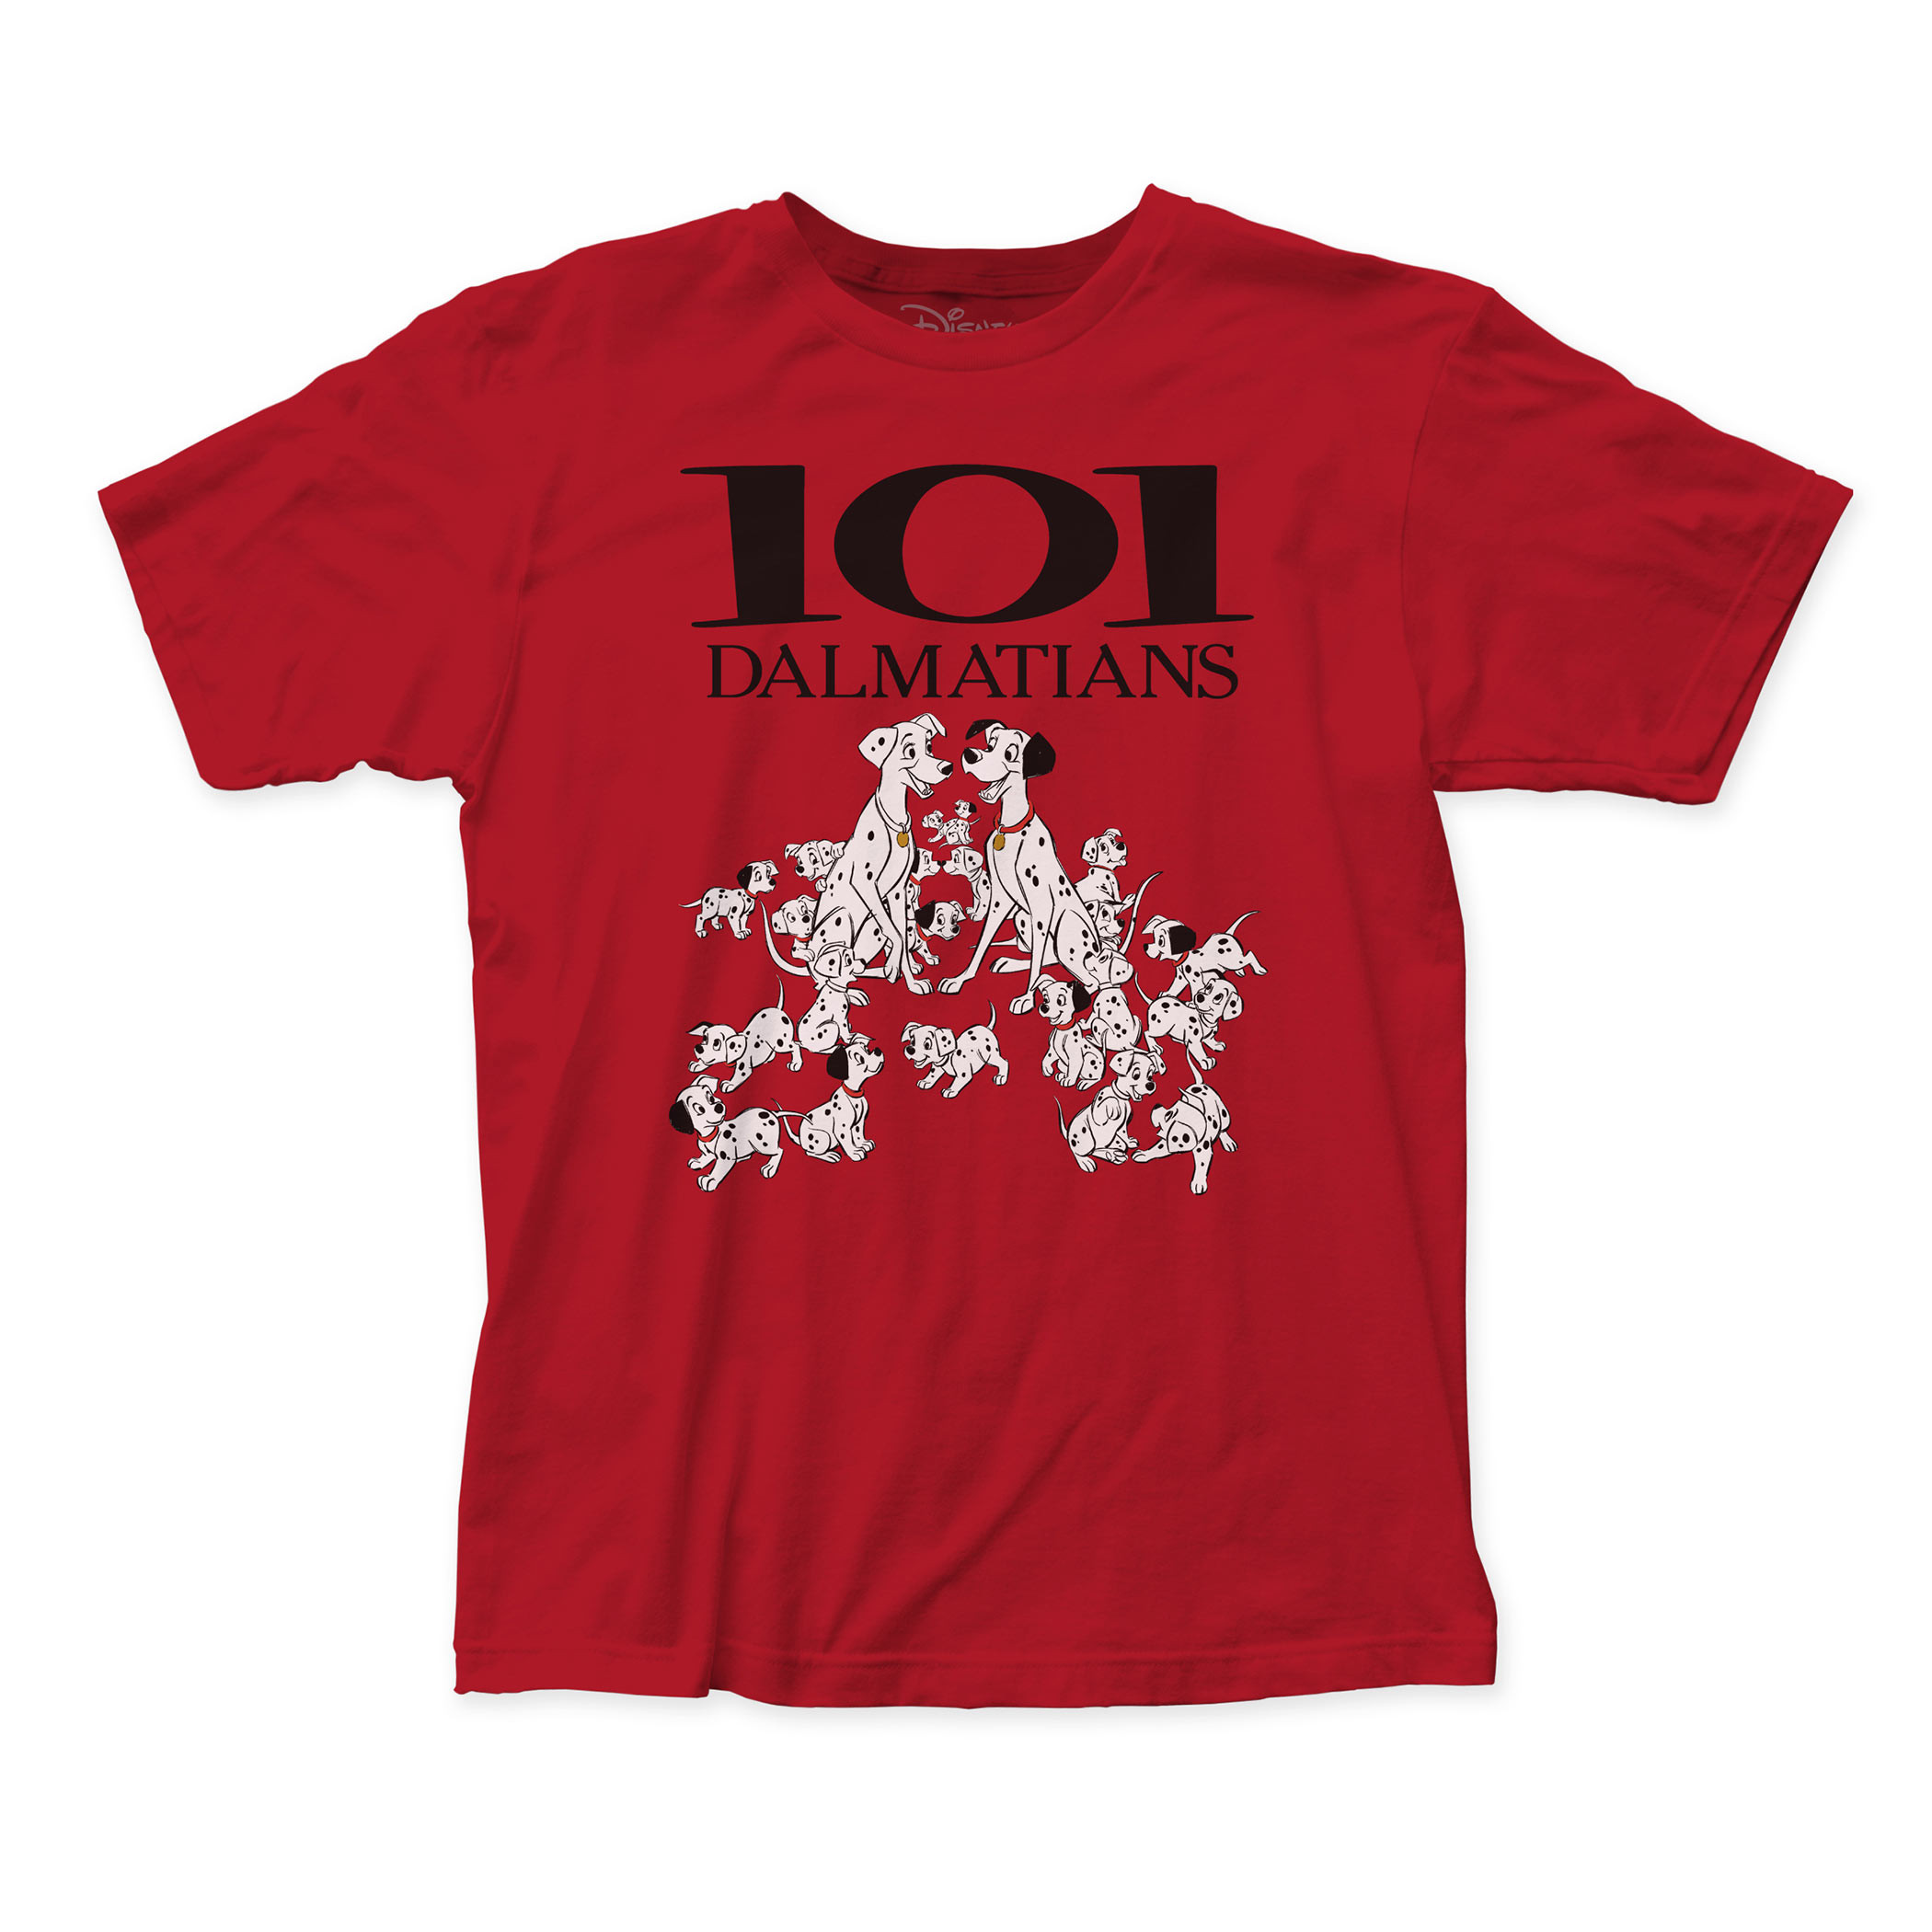 101 Dalmatians Men’s Red T-Shirt